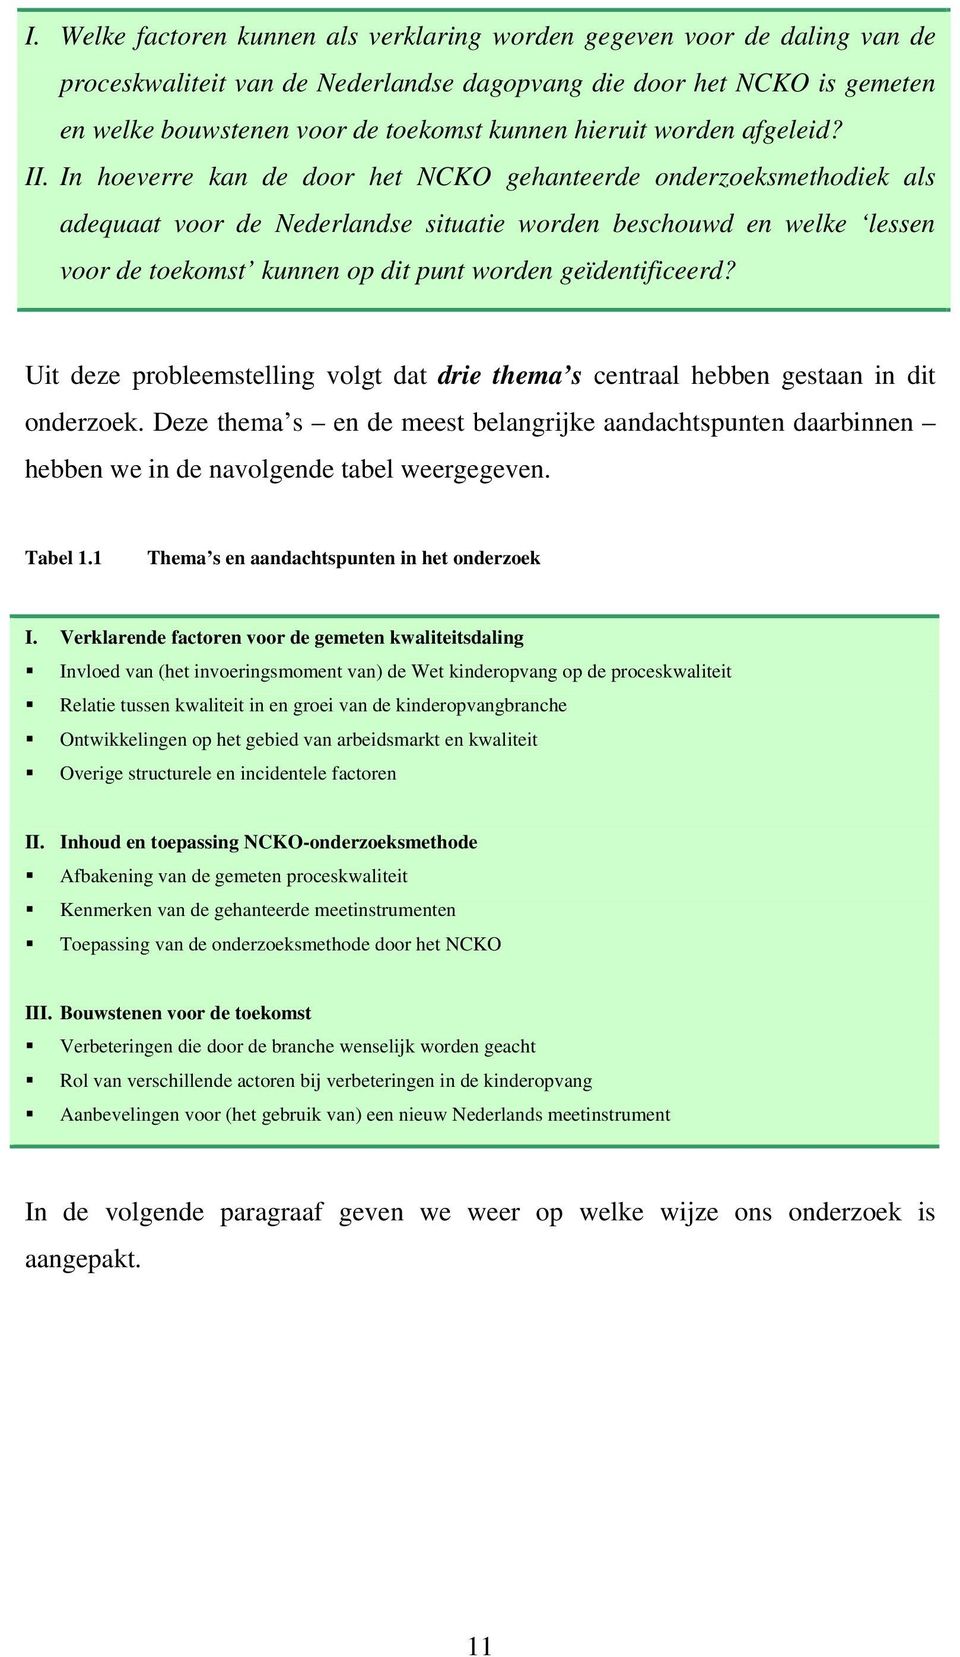 In hoeverre kan de door het NCKO gehanteerde onderzoeksmethodiek als adequaat voor de Nederlandse situatie worden beschouwd en welke lessen voor de toekomst kunnen op dit punt worden geïdentificeerd?